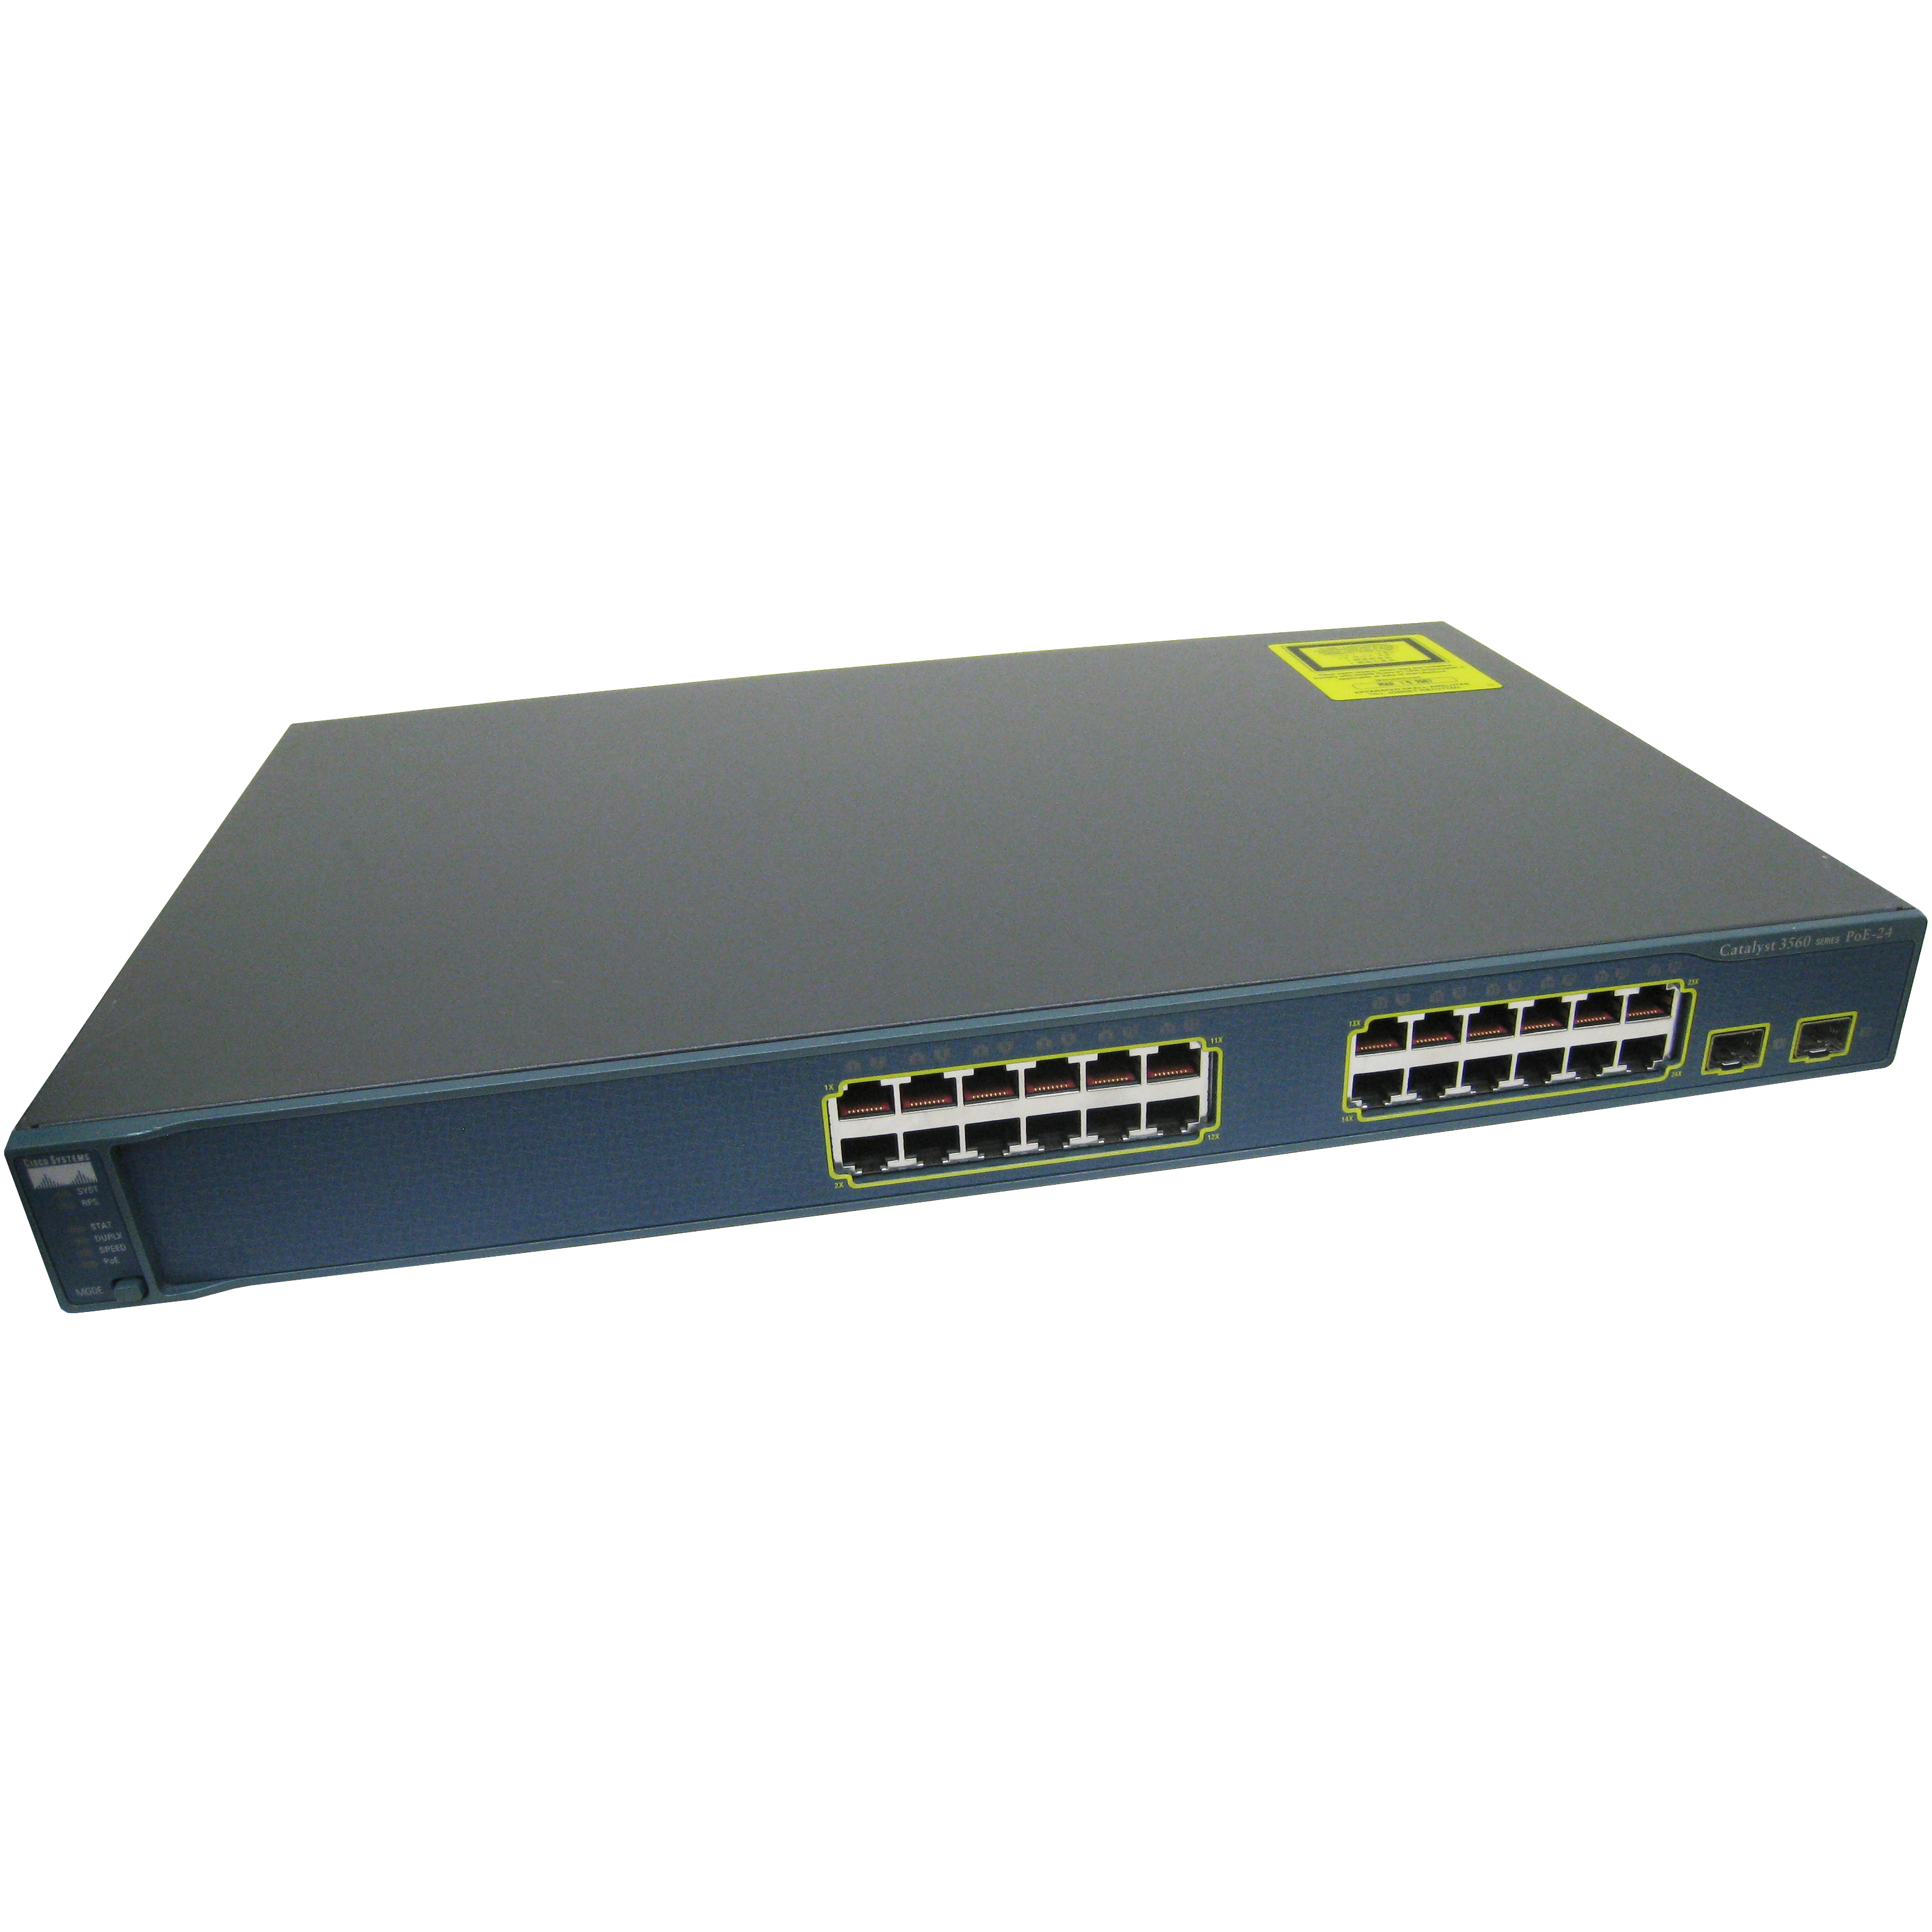 Cisco WS-C3560-24PS-E